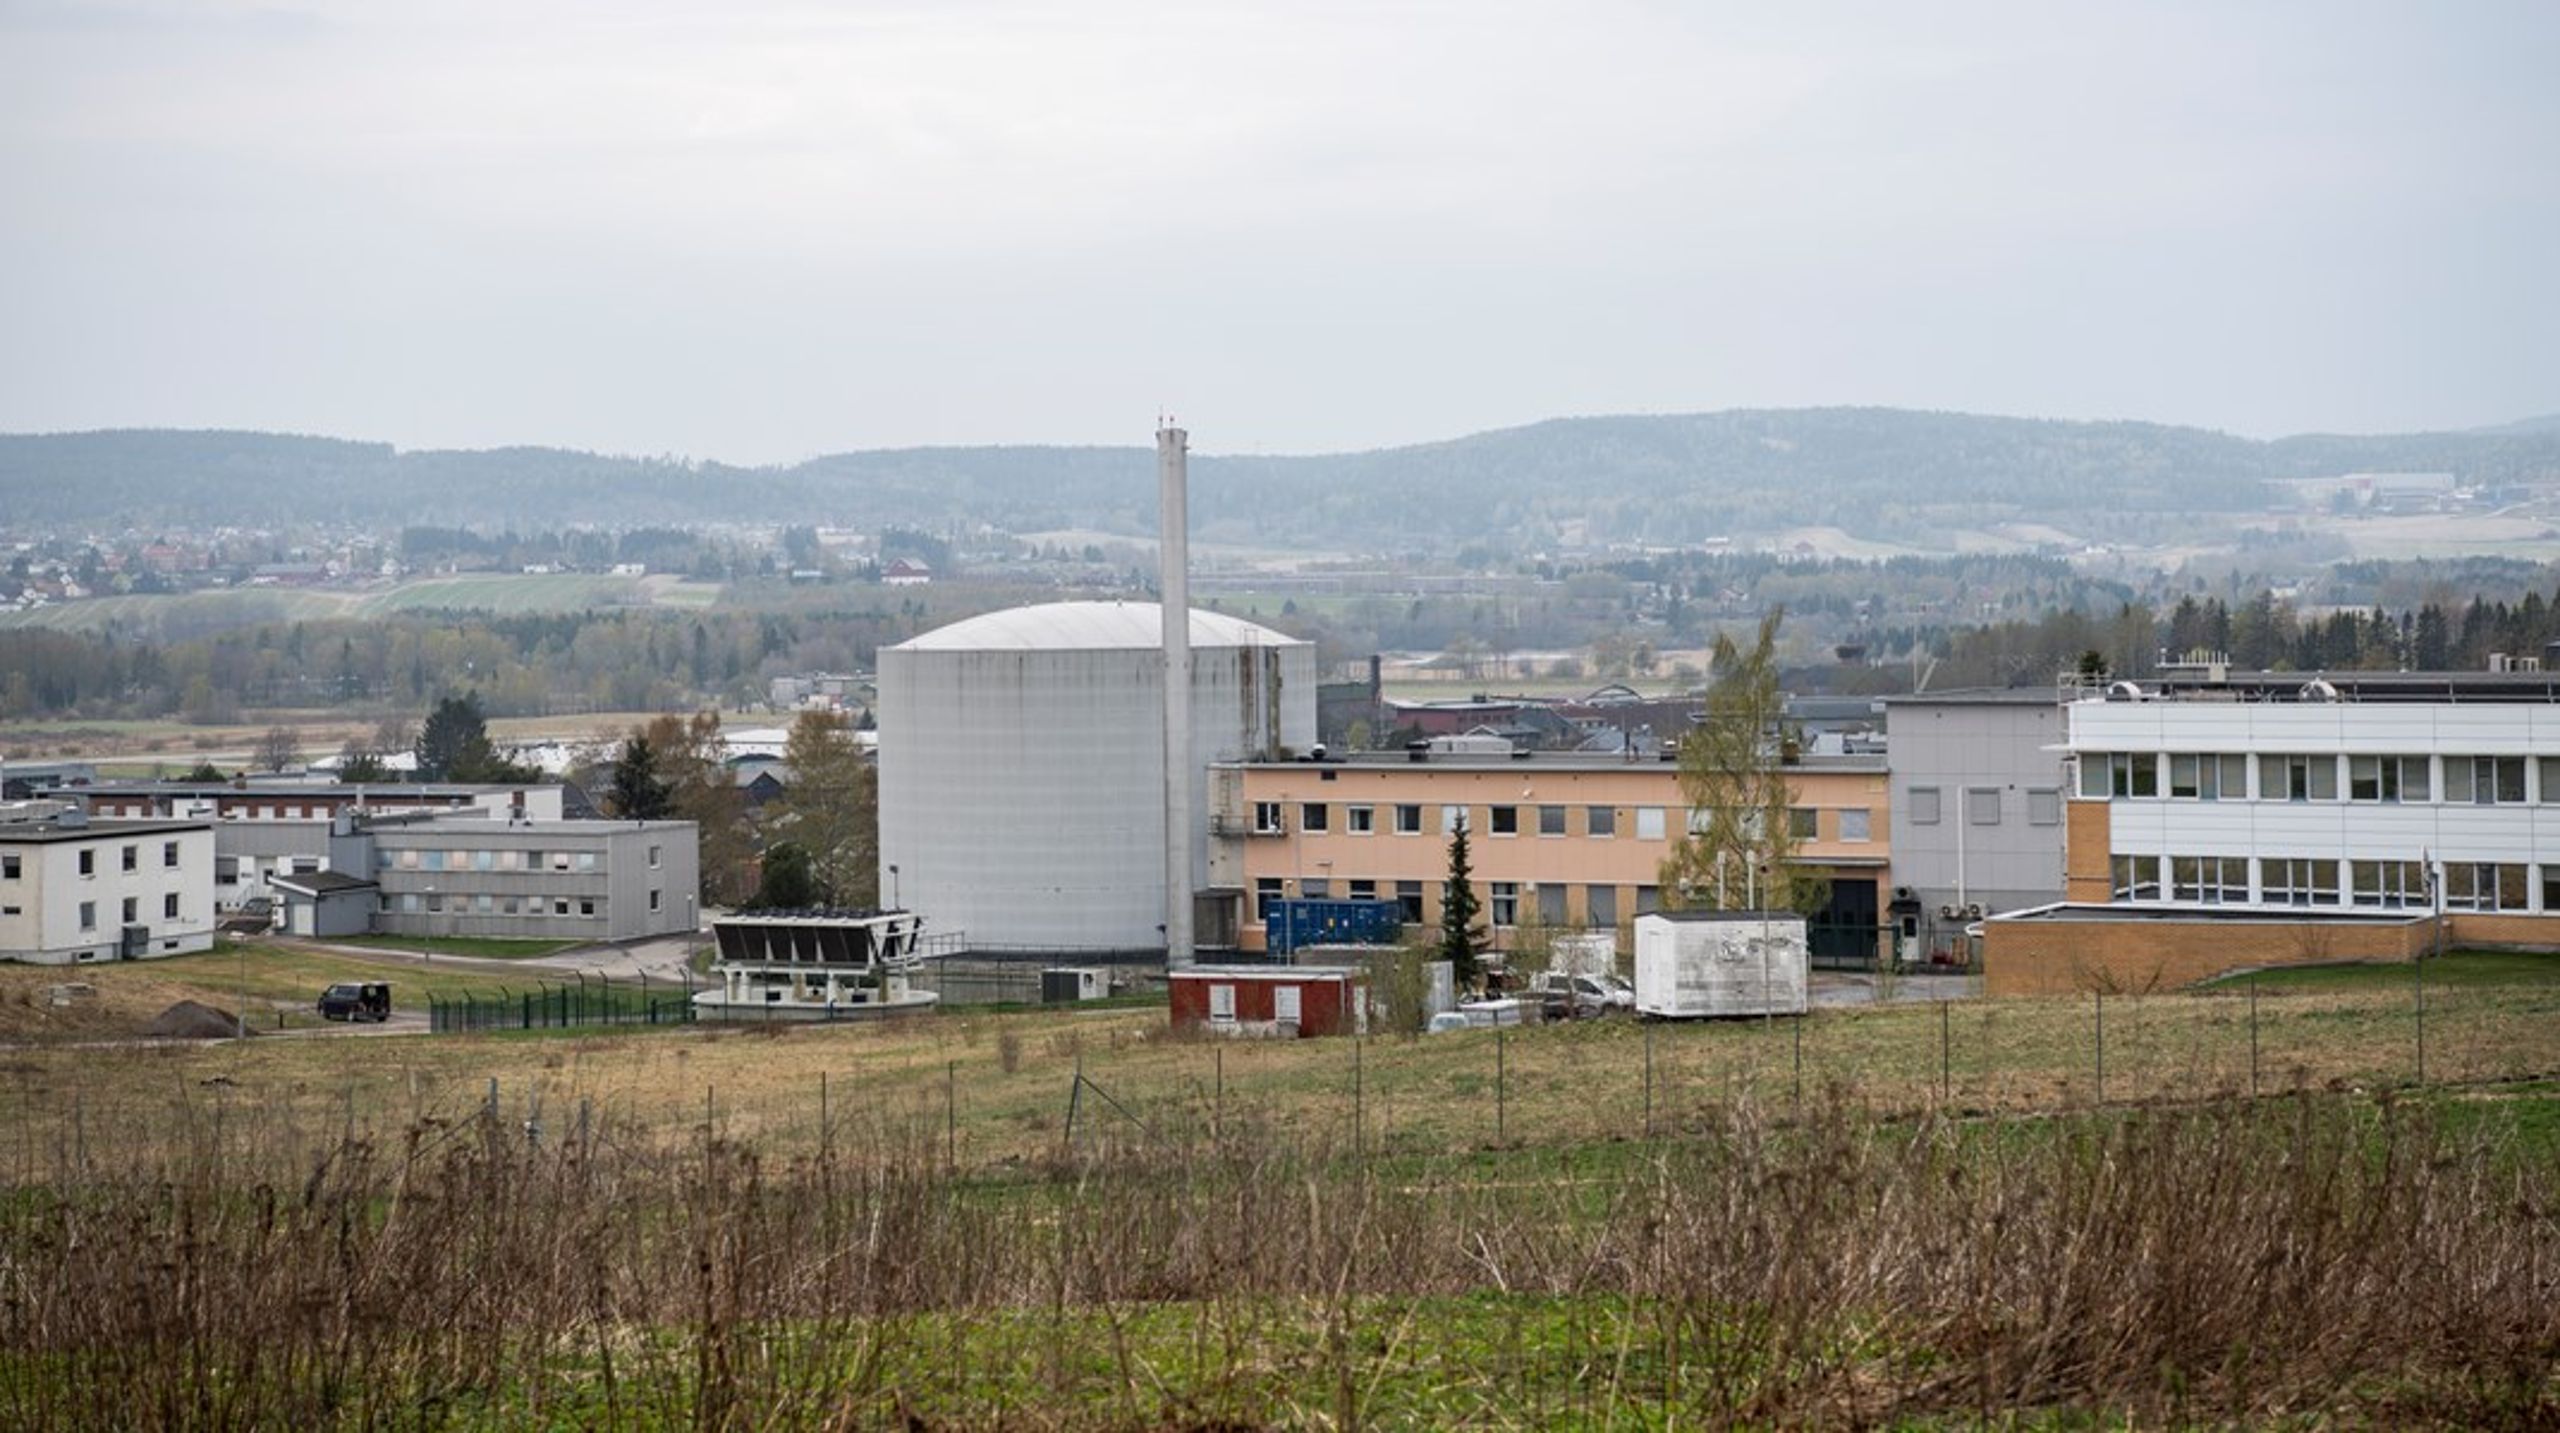 Bellona-leder Frederic Hauge antyder at avfallet er en grunn til å unngå kjernekraft i Norge. Men Norge har allerede radioaktivt avfall som følge av reaktorene på Kjeller og i Halden, skriver Håvard Kristiansen, operasjonsansvarlig i Norsk Kjernekraft.